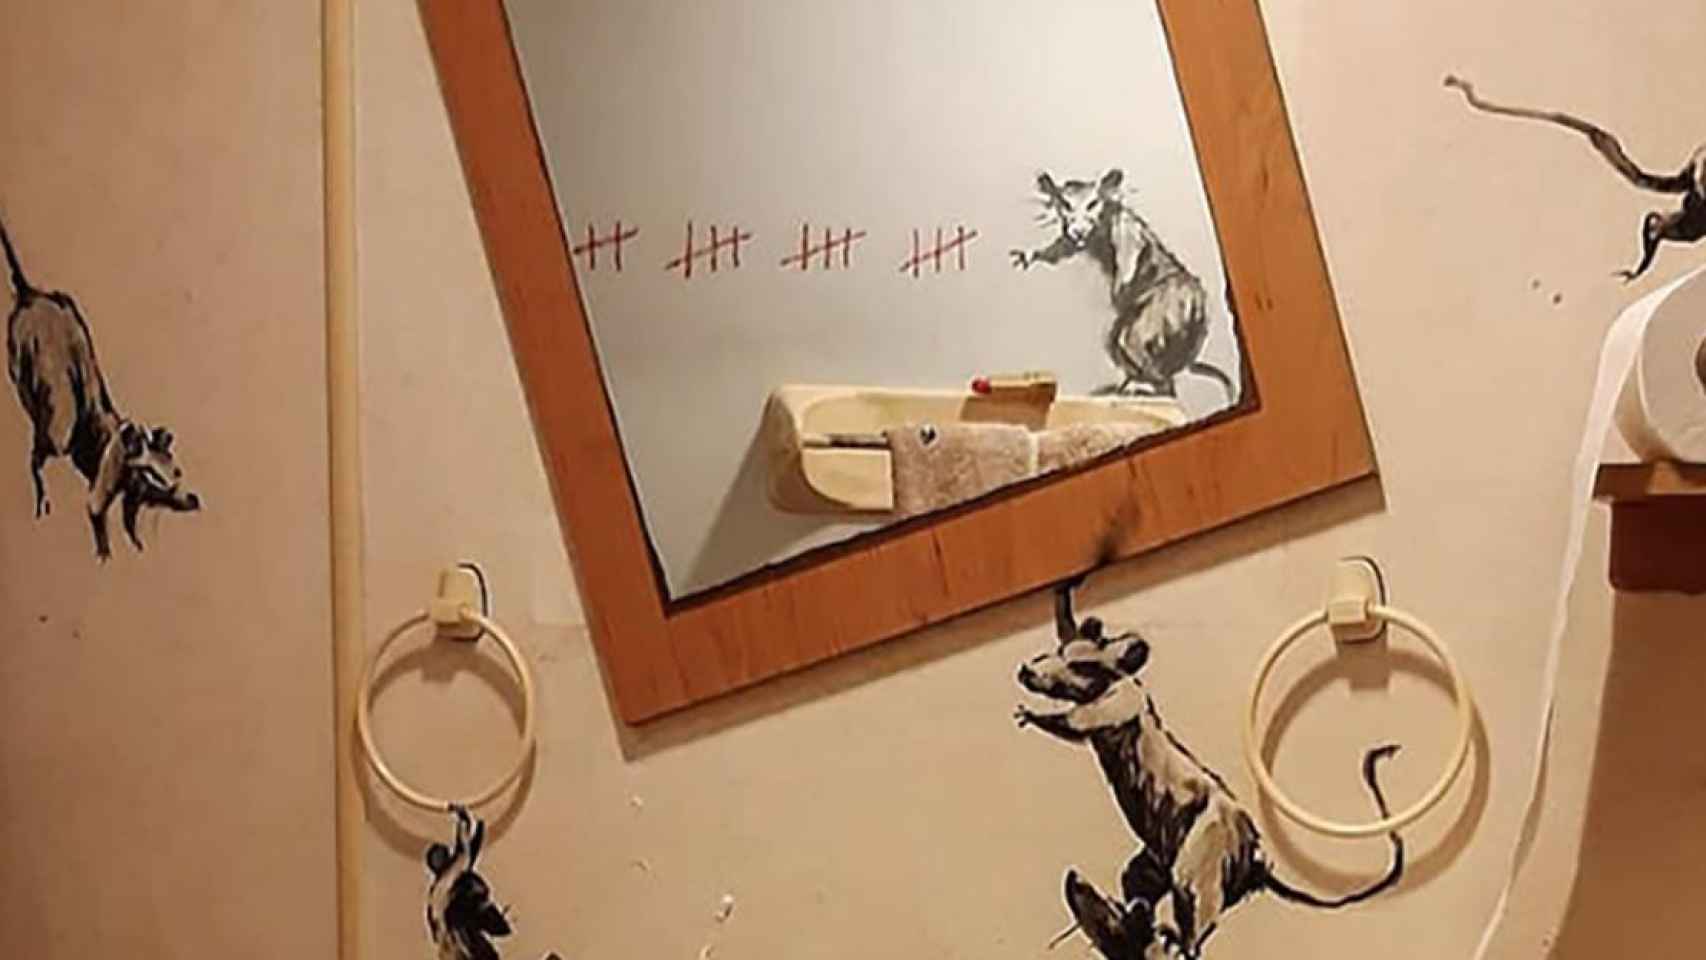 La nueva obra de Banksy publicada en su cuenta de Instagram